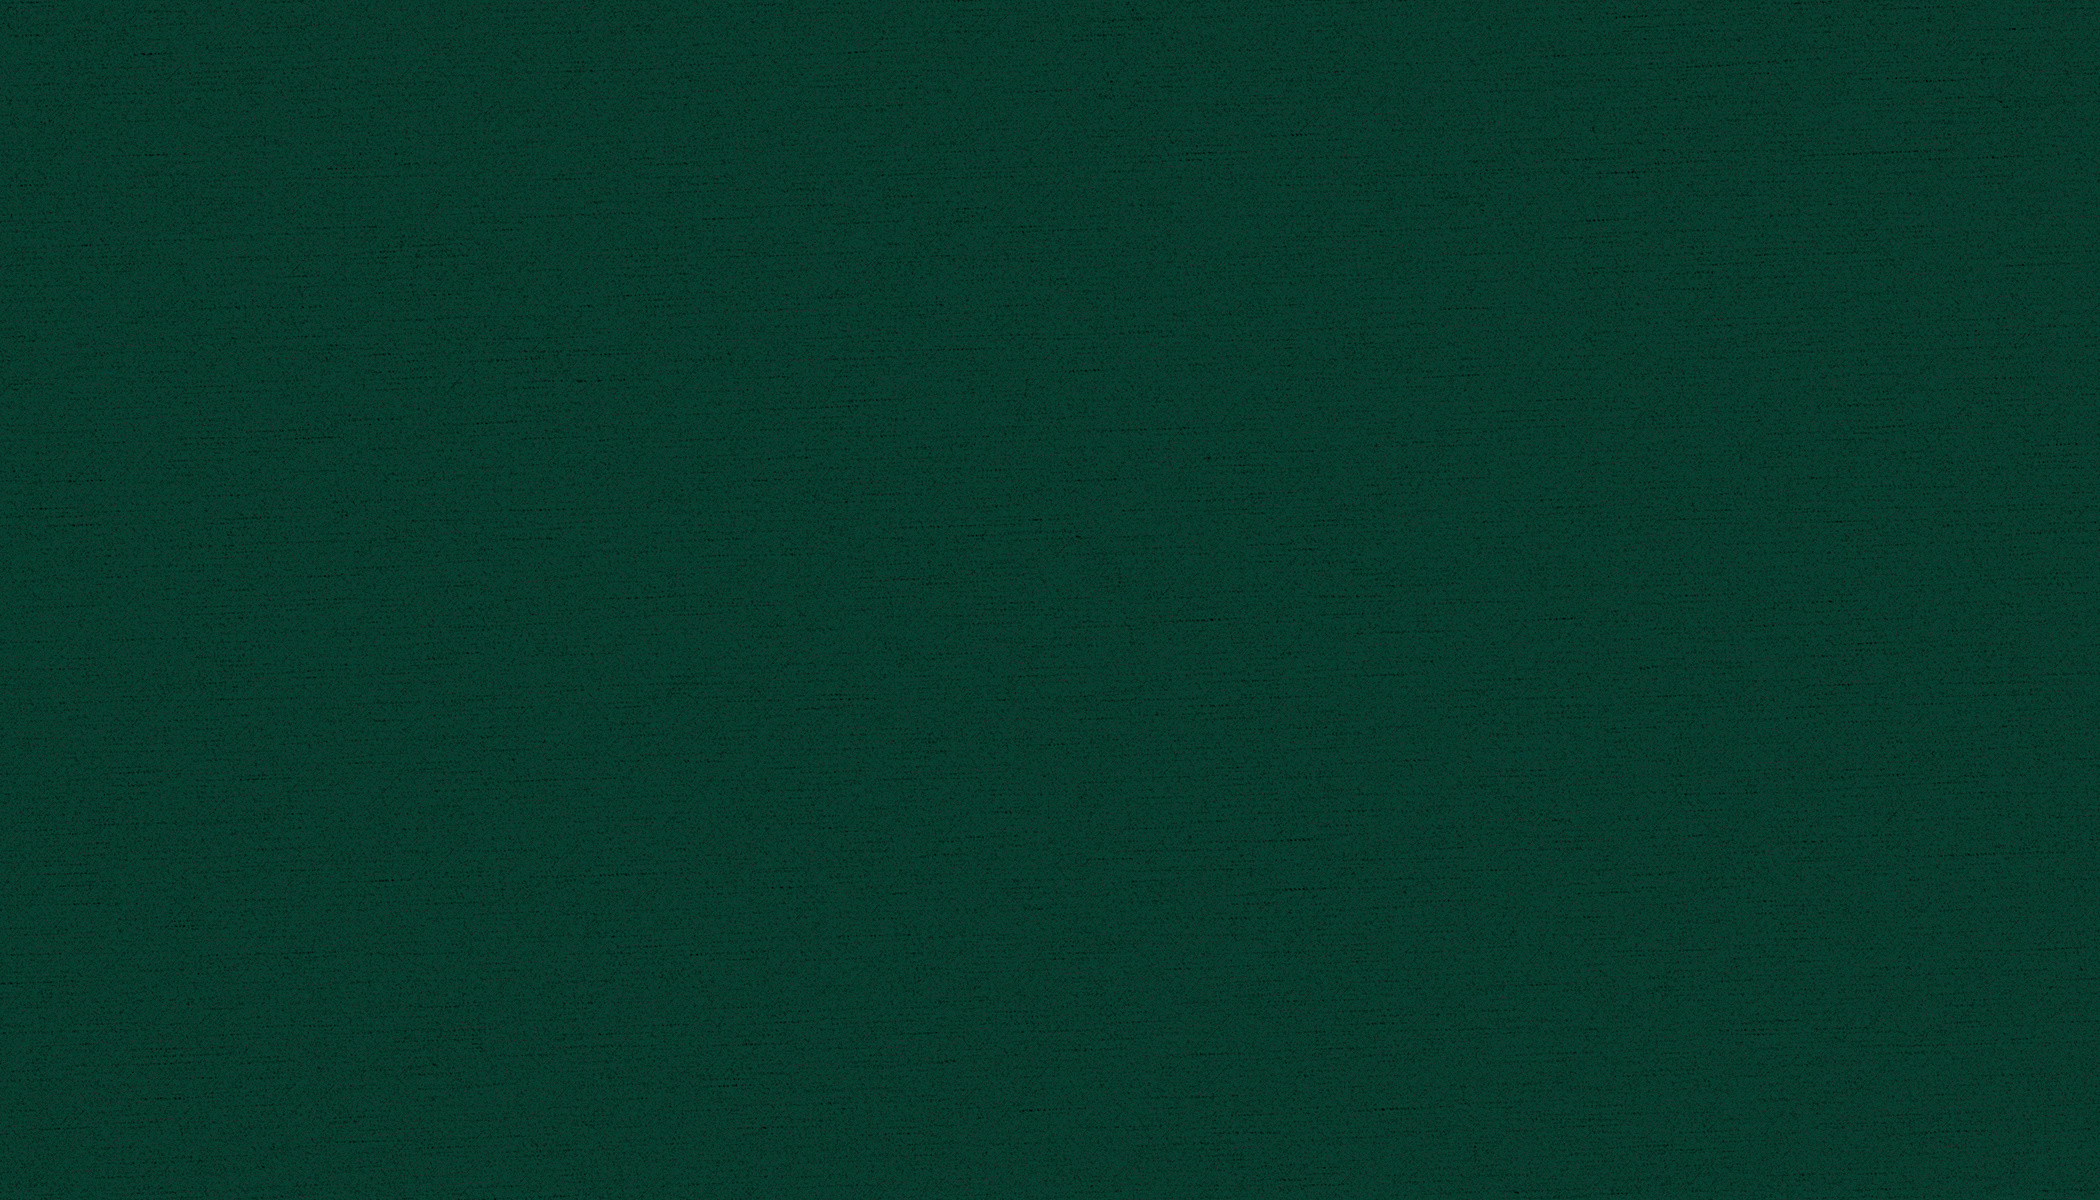 Dark Green Paper Background 